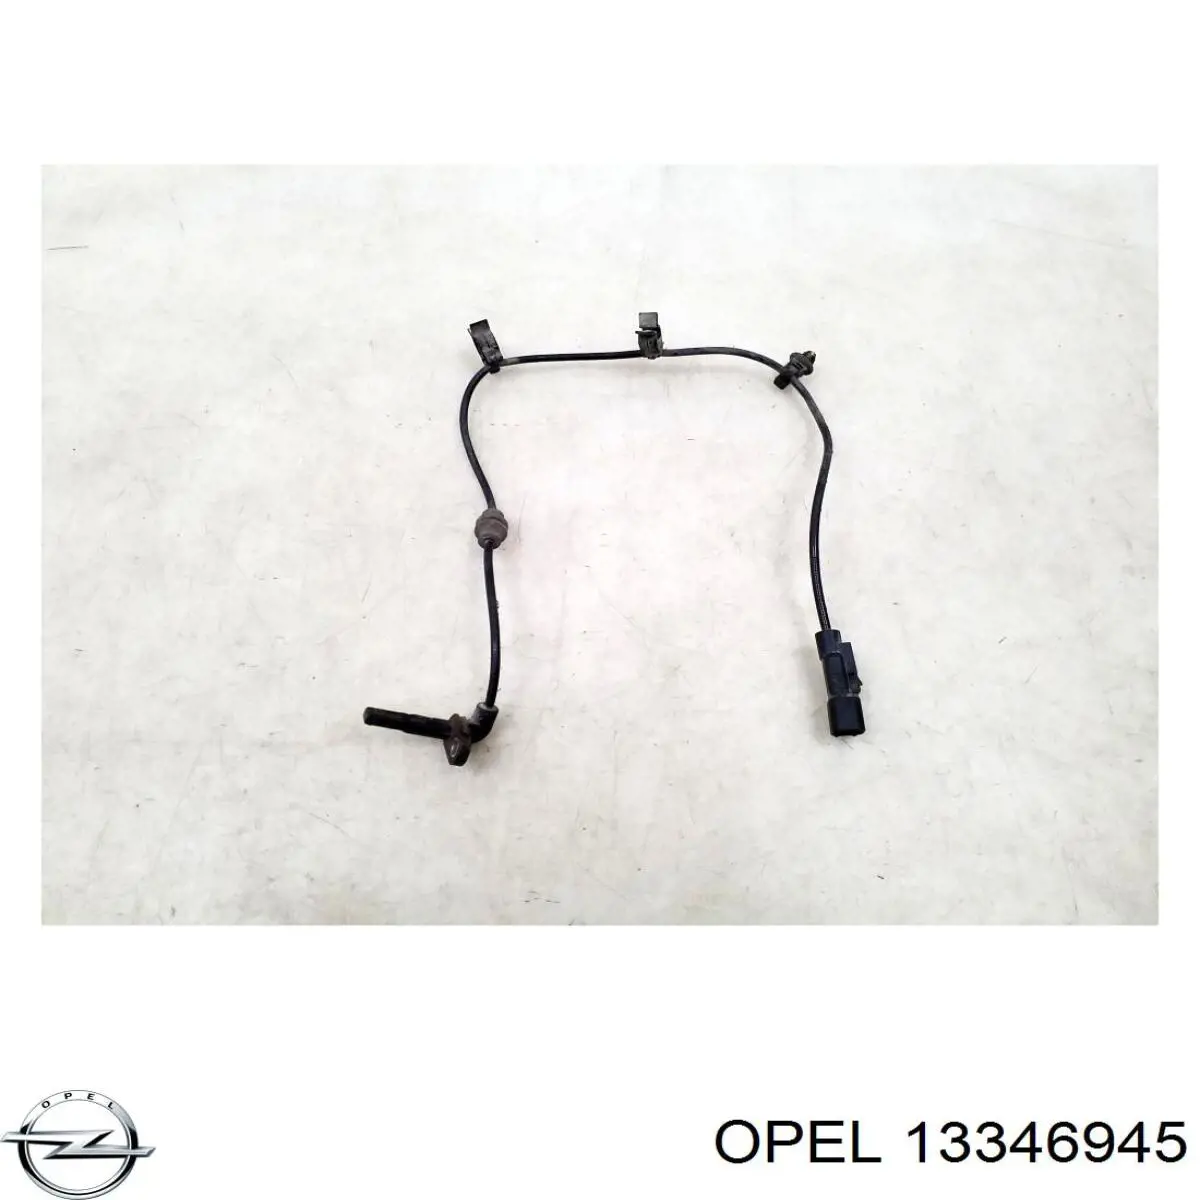 13346945 Opel датчик абс (abs задний)